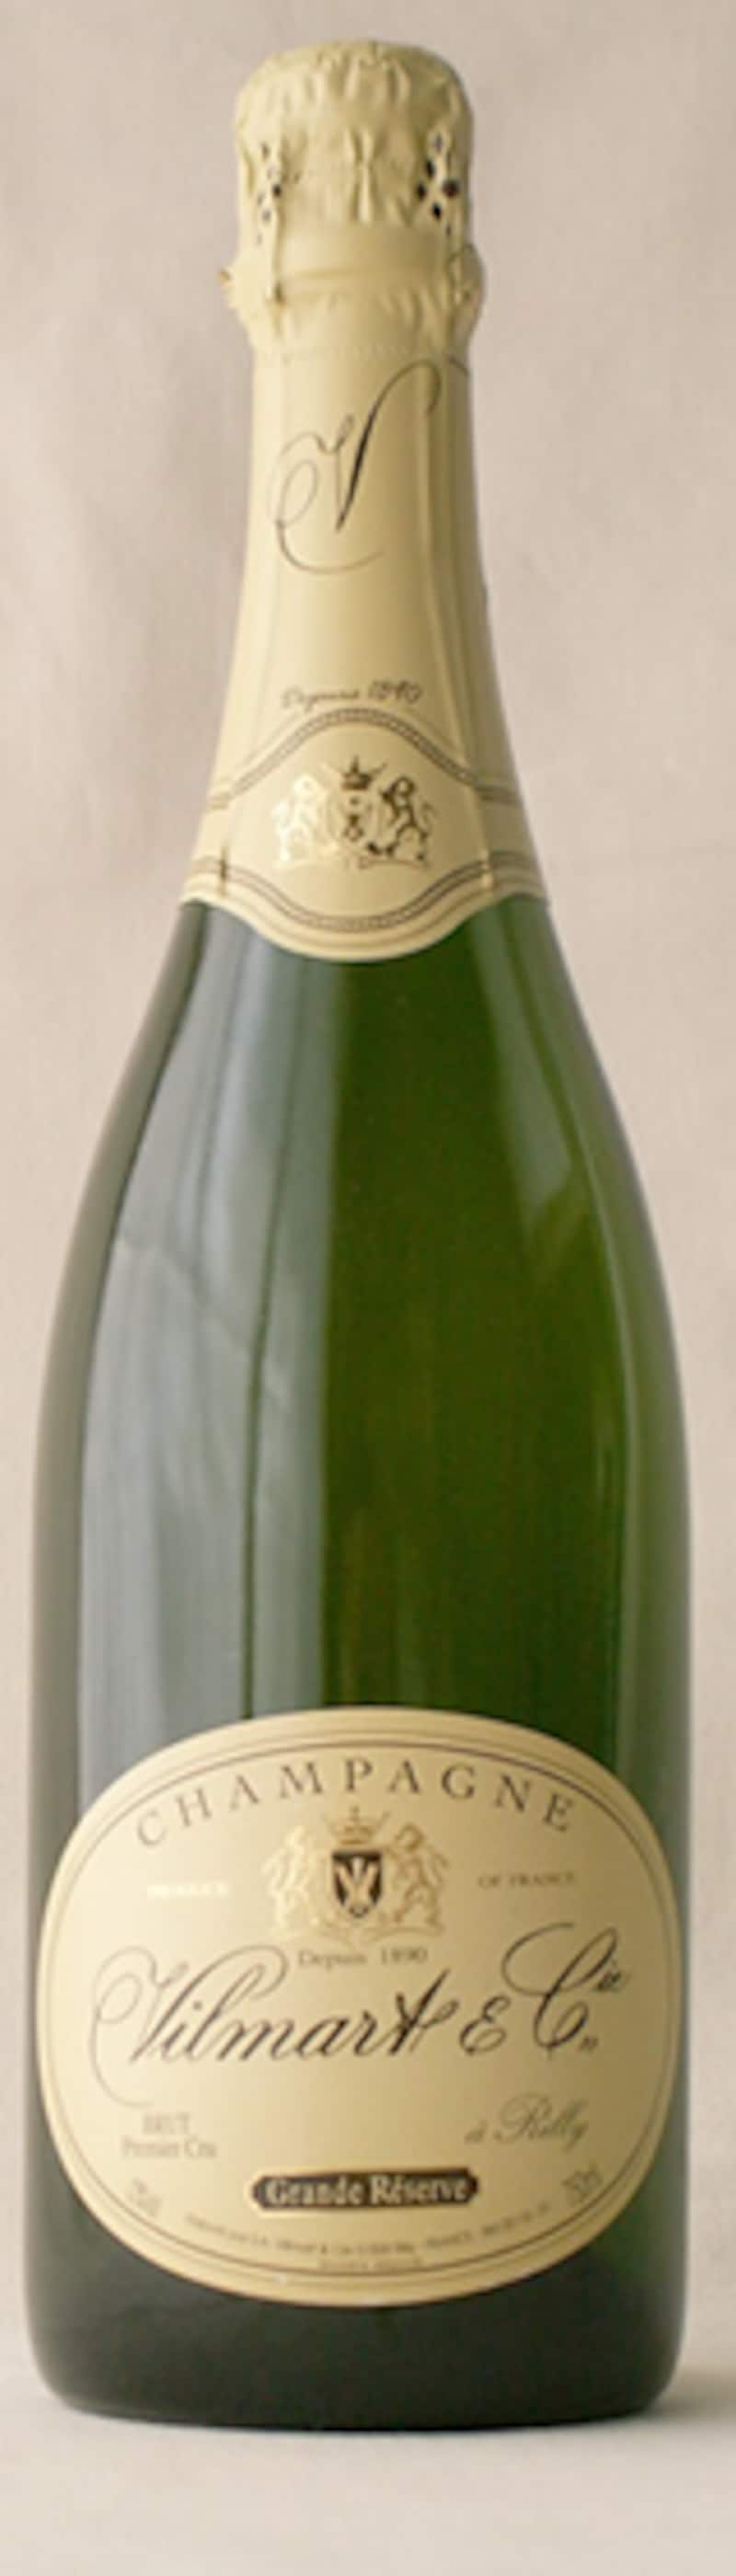 シャンパンのボトル画像